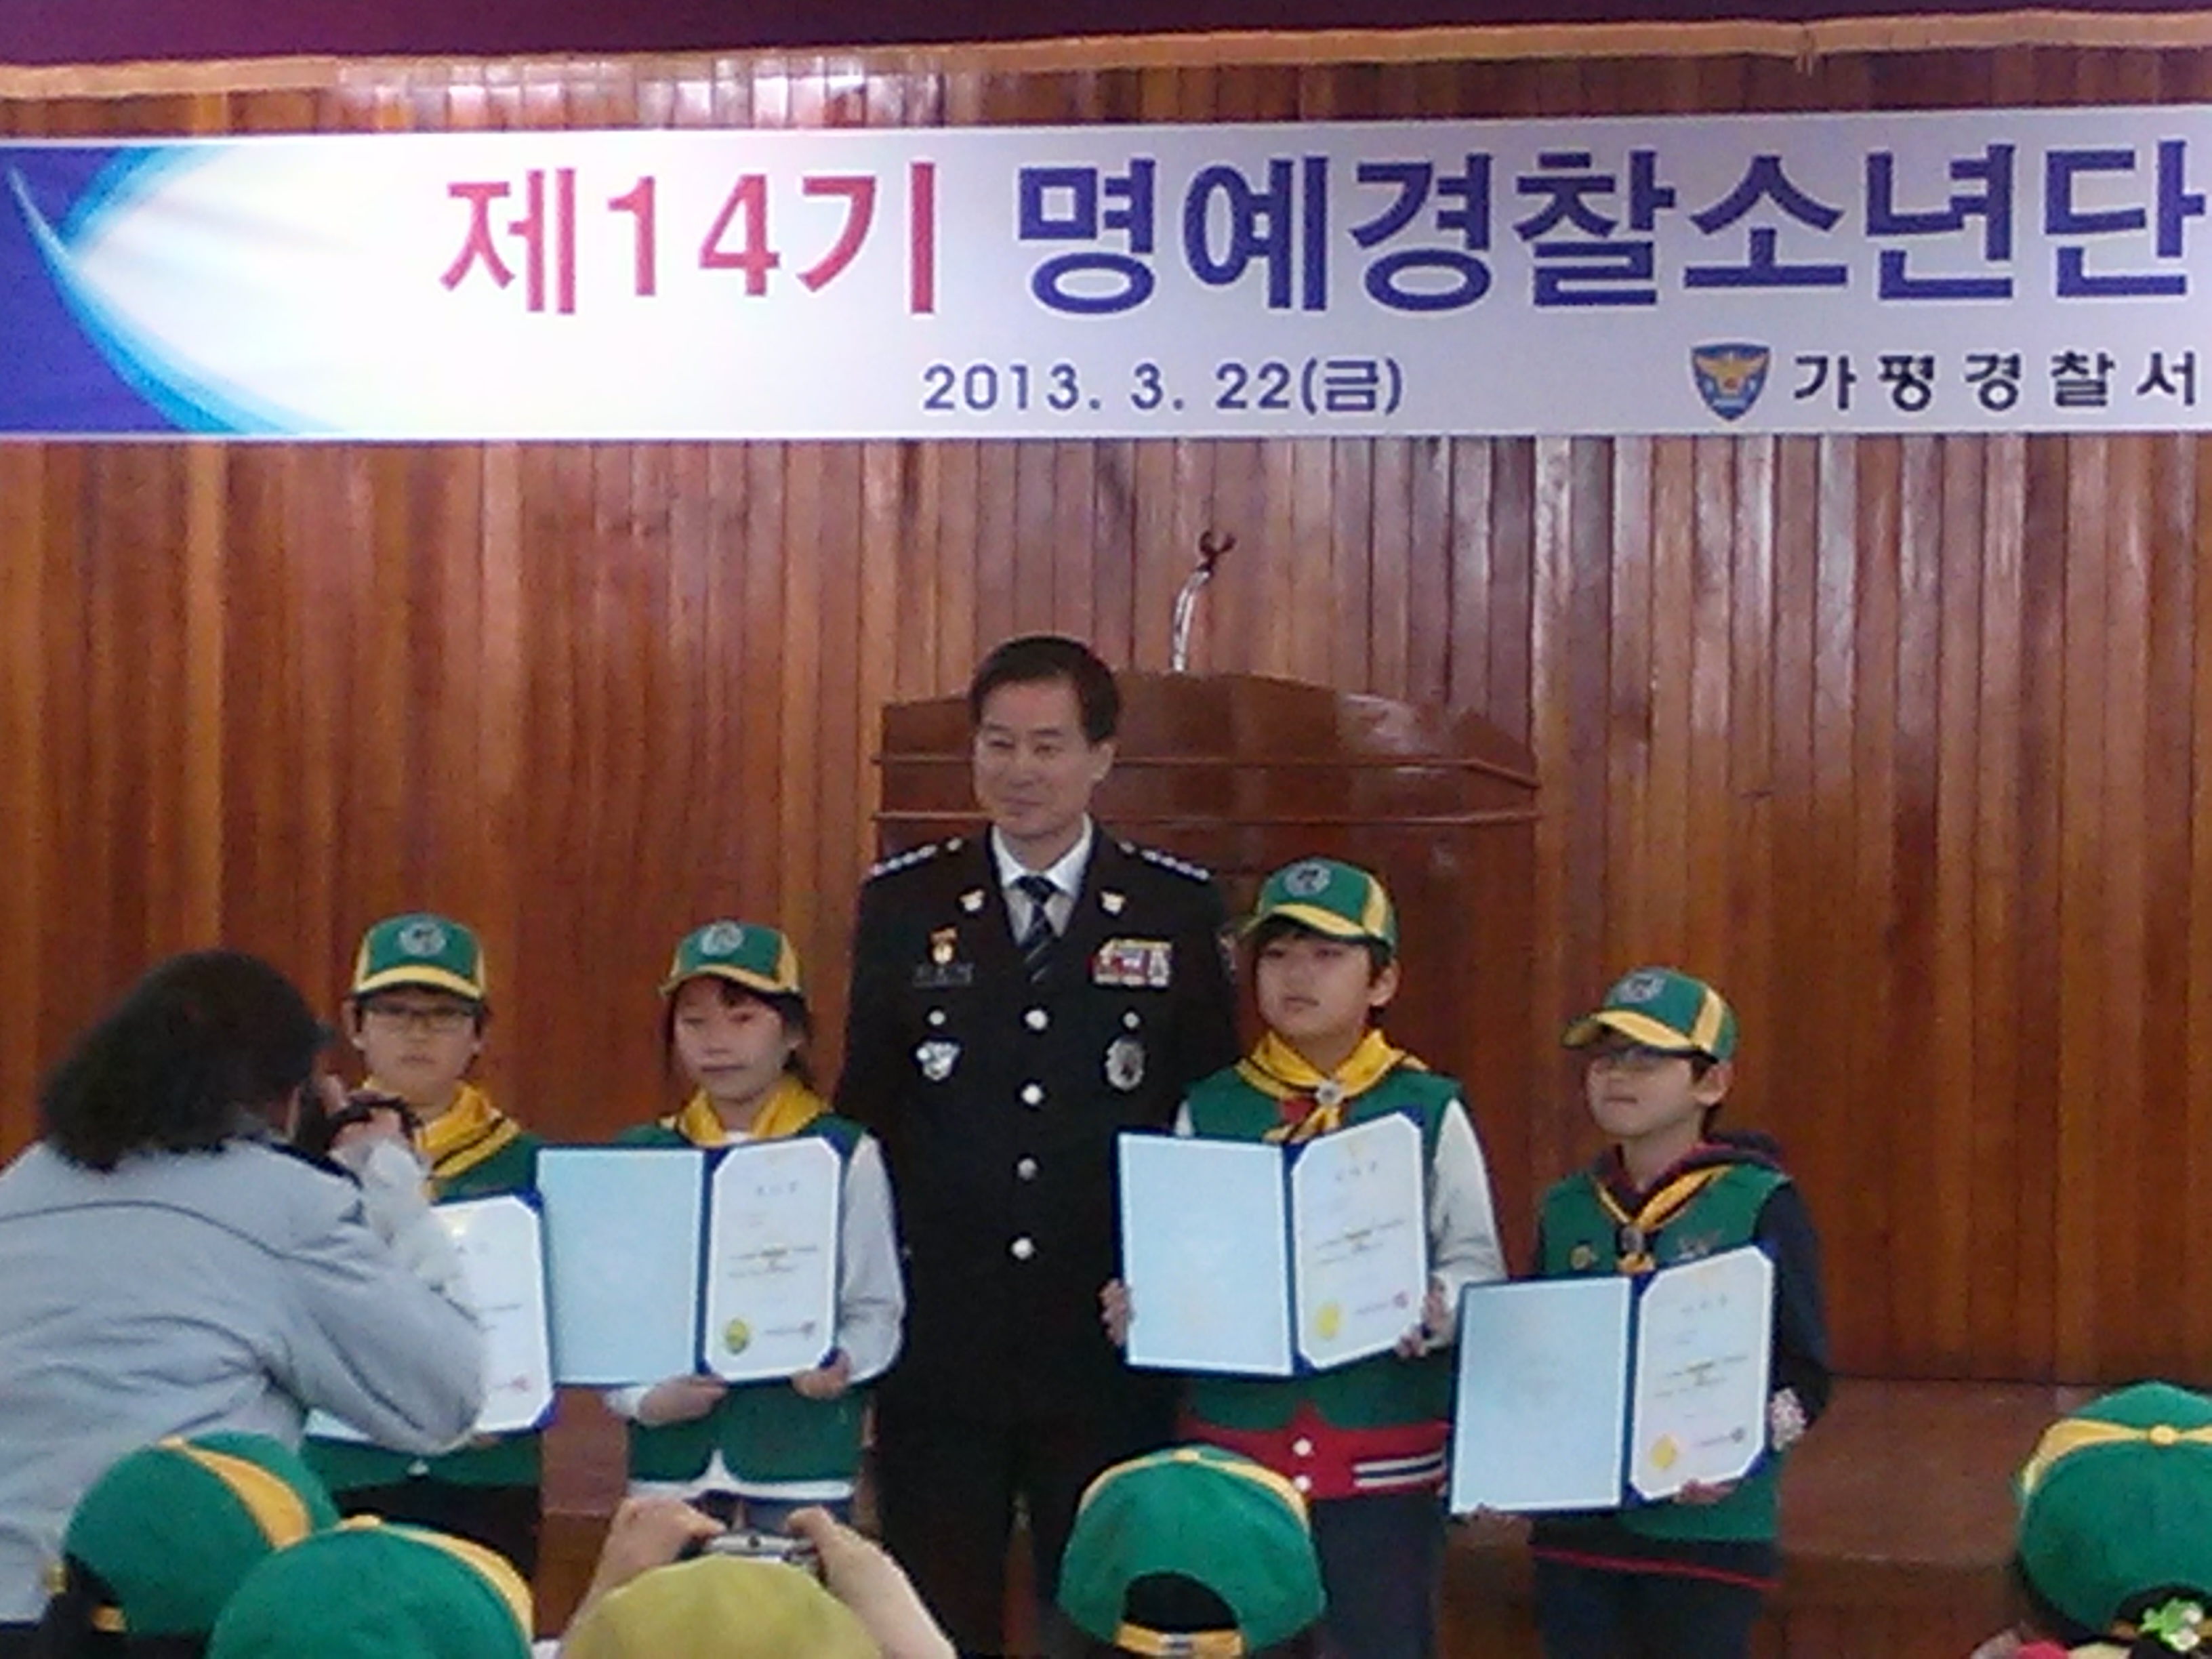 2013 명예경찰소년단 발대식 사진